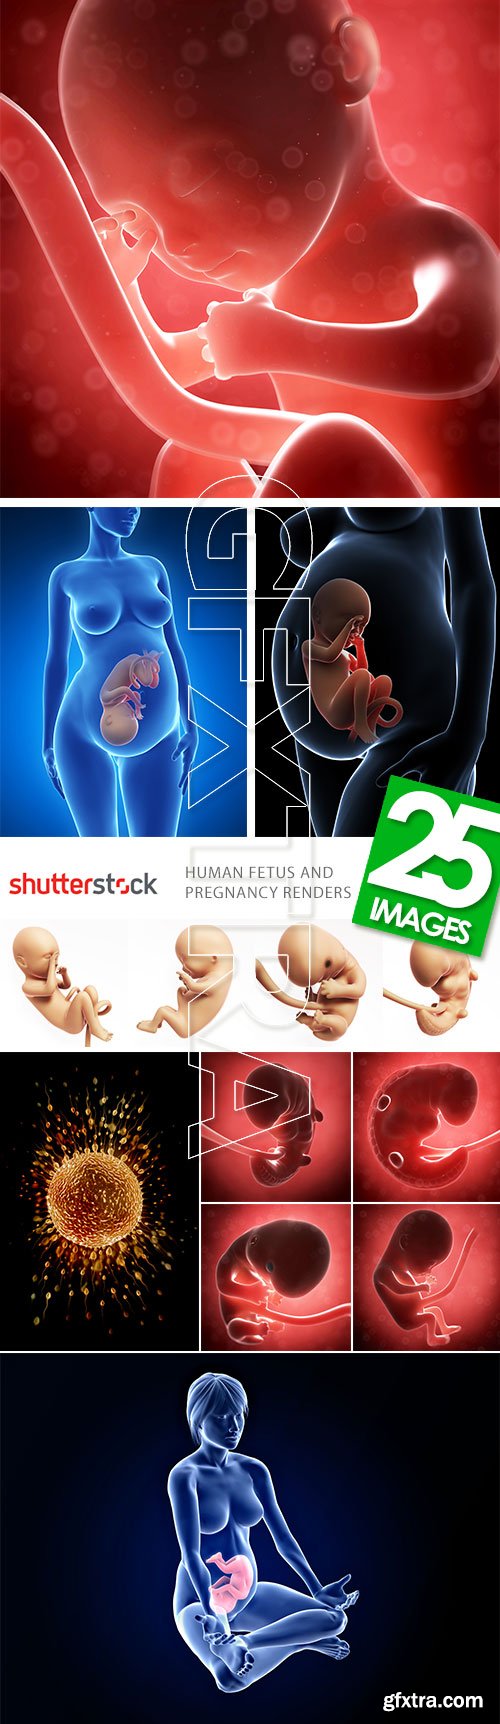 Human Fetus and Pregnancy Renders 25xJPG